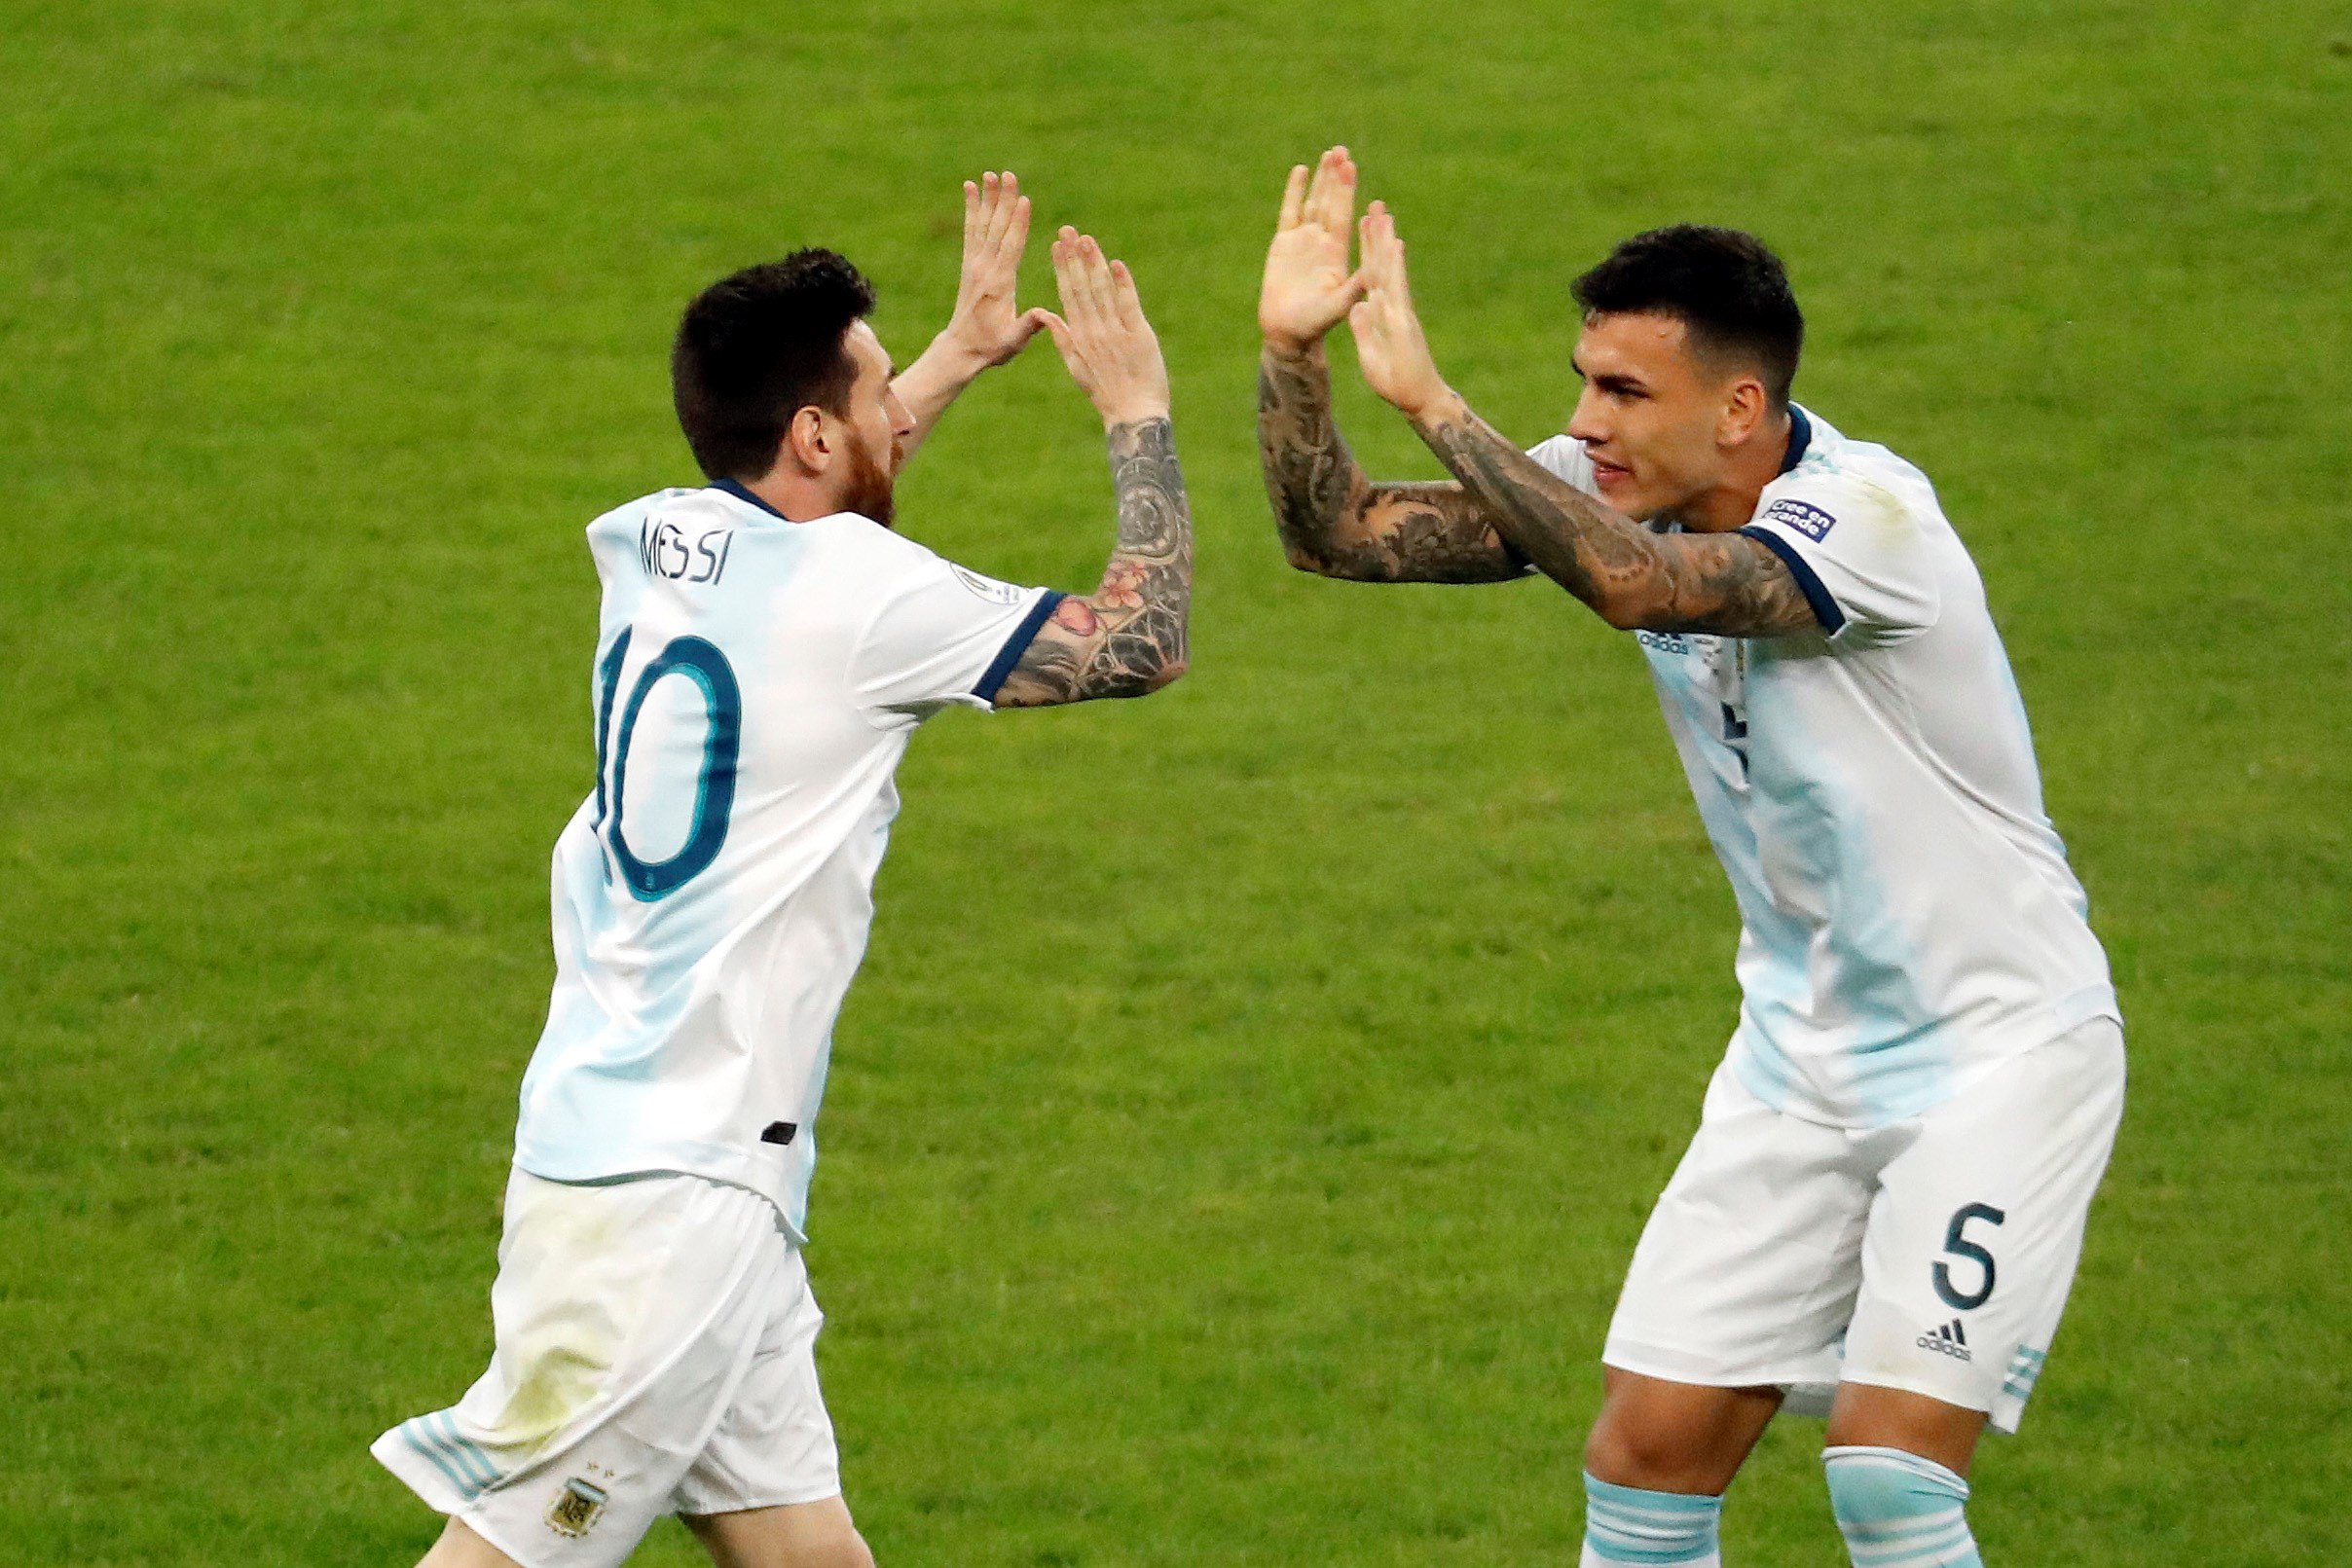 Lionel Messi (i) es felicitado por Leandro Paredes, tras haber anotado el empate de Argentina contra Paraguay en el estadio Mineirao de Bello Horizonte, Brasil (Foto Prensa Libre: EFE)